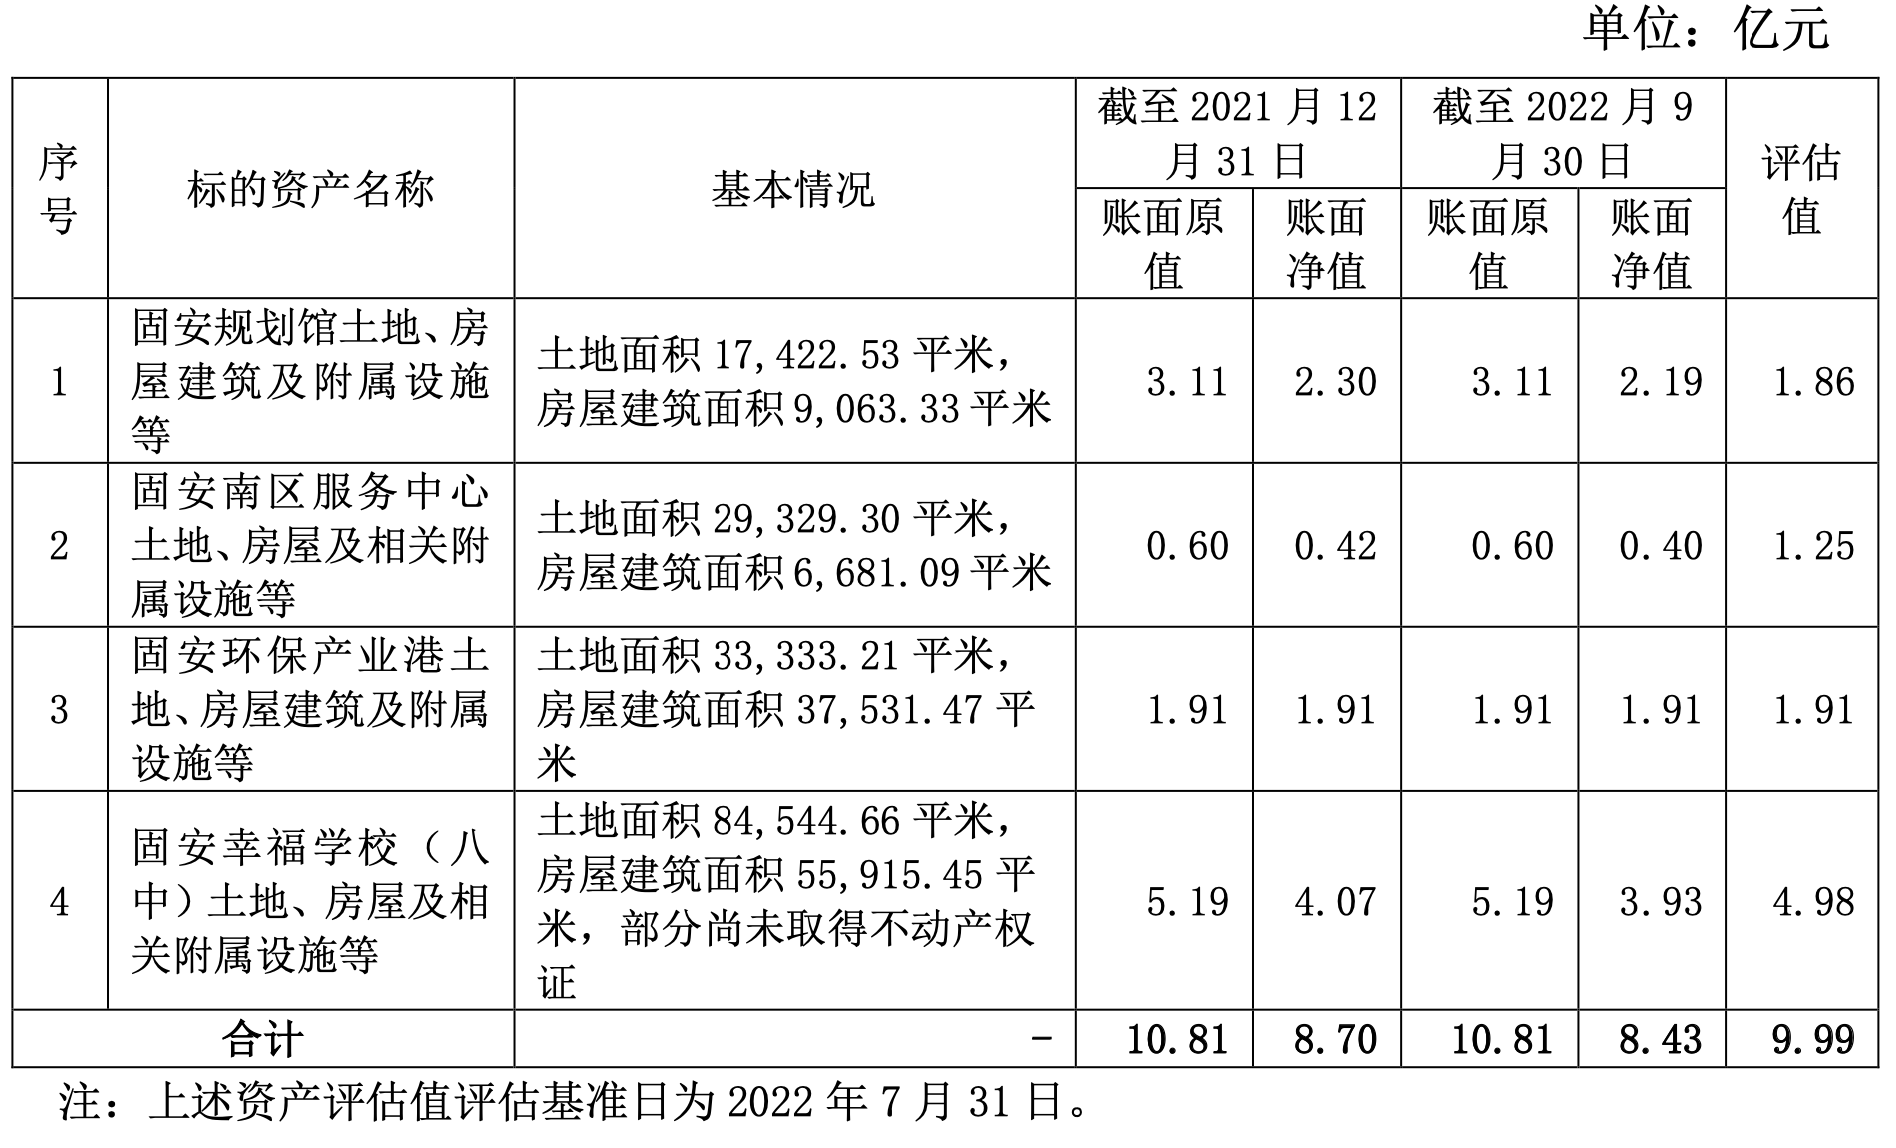 华夏幸福9.99亿元出售河北固安4项资产用于固安保交房